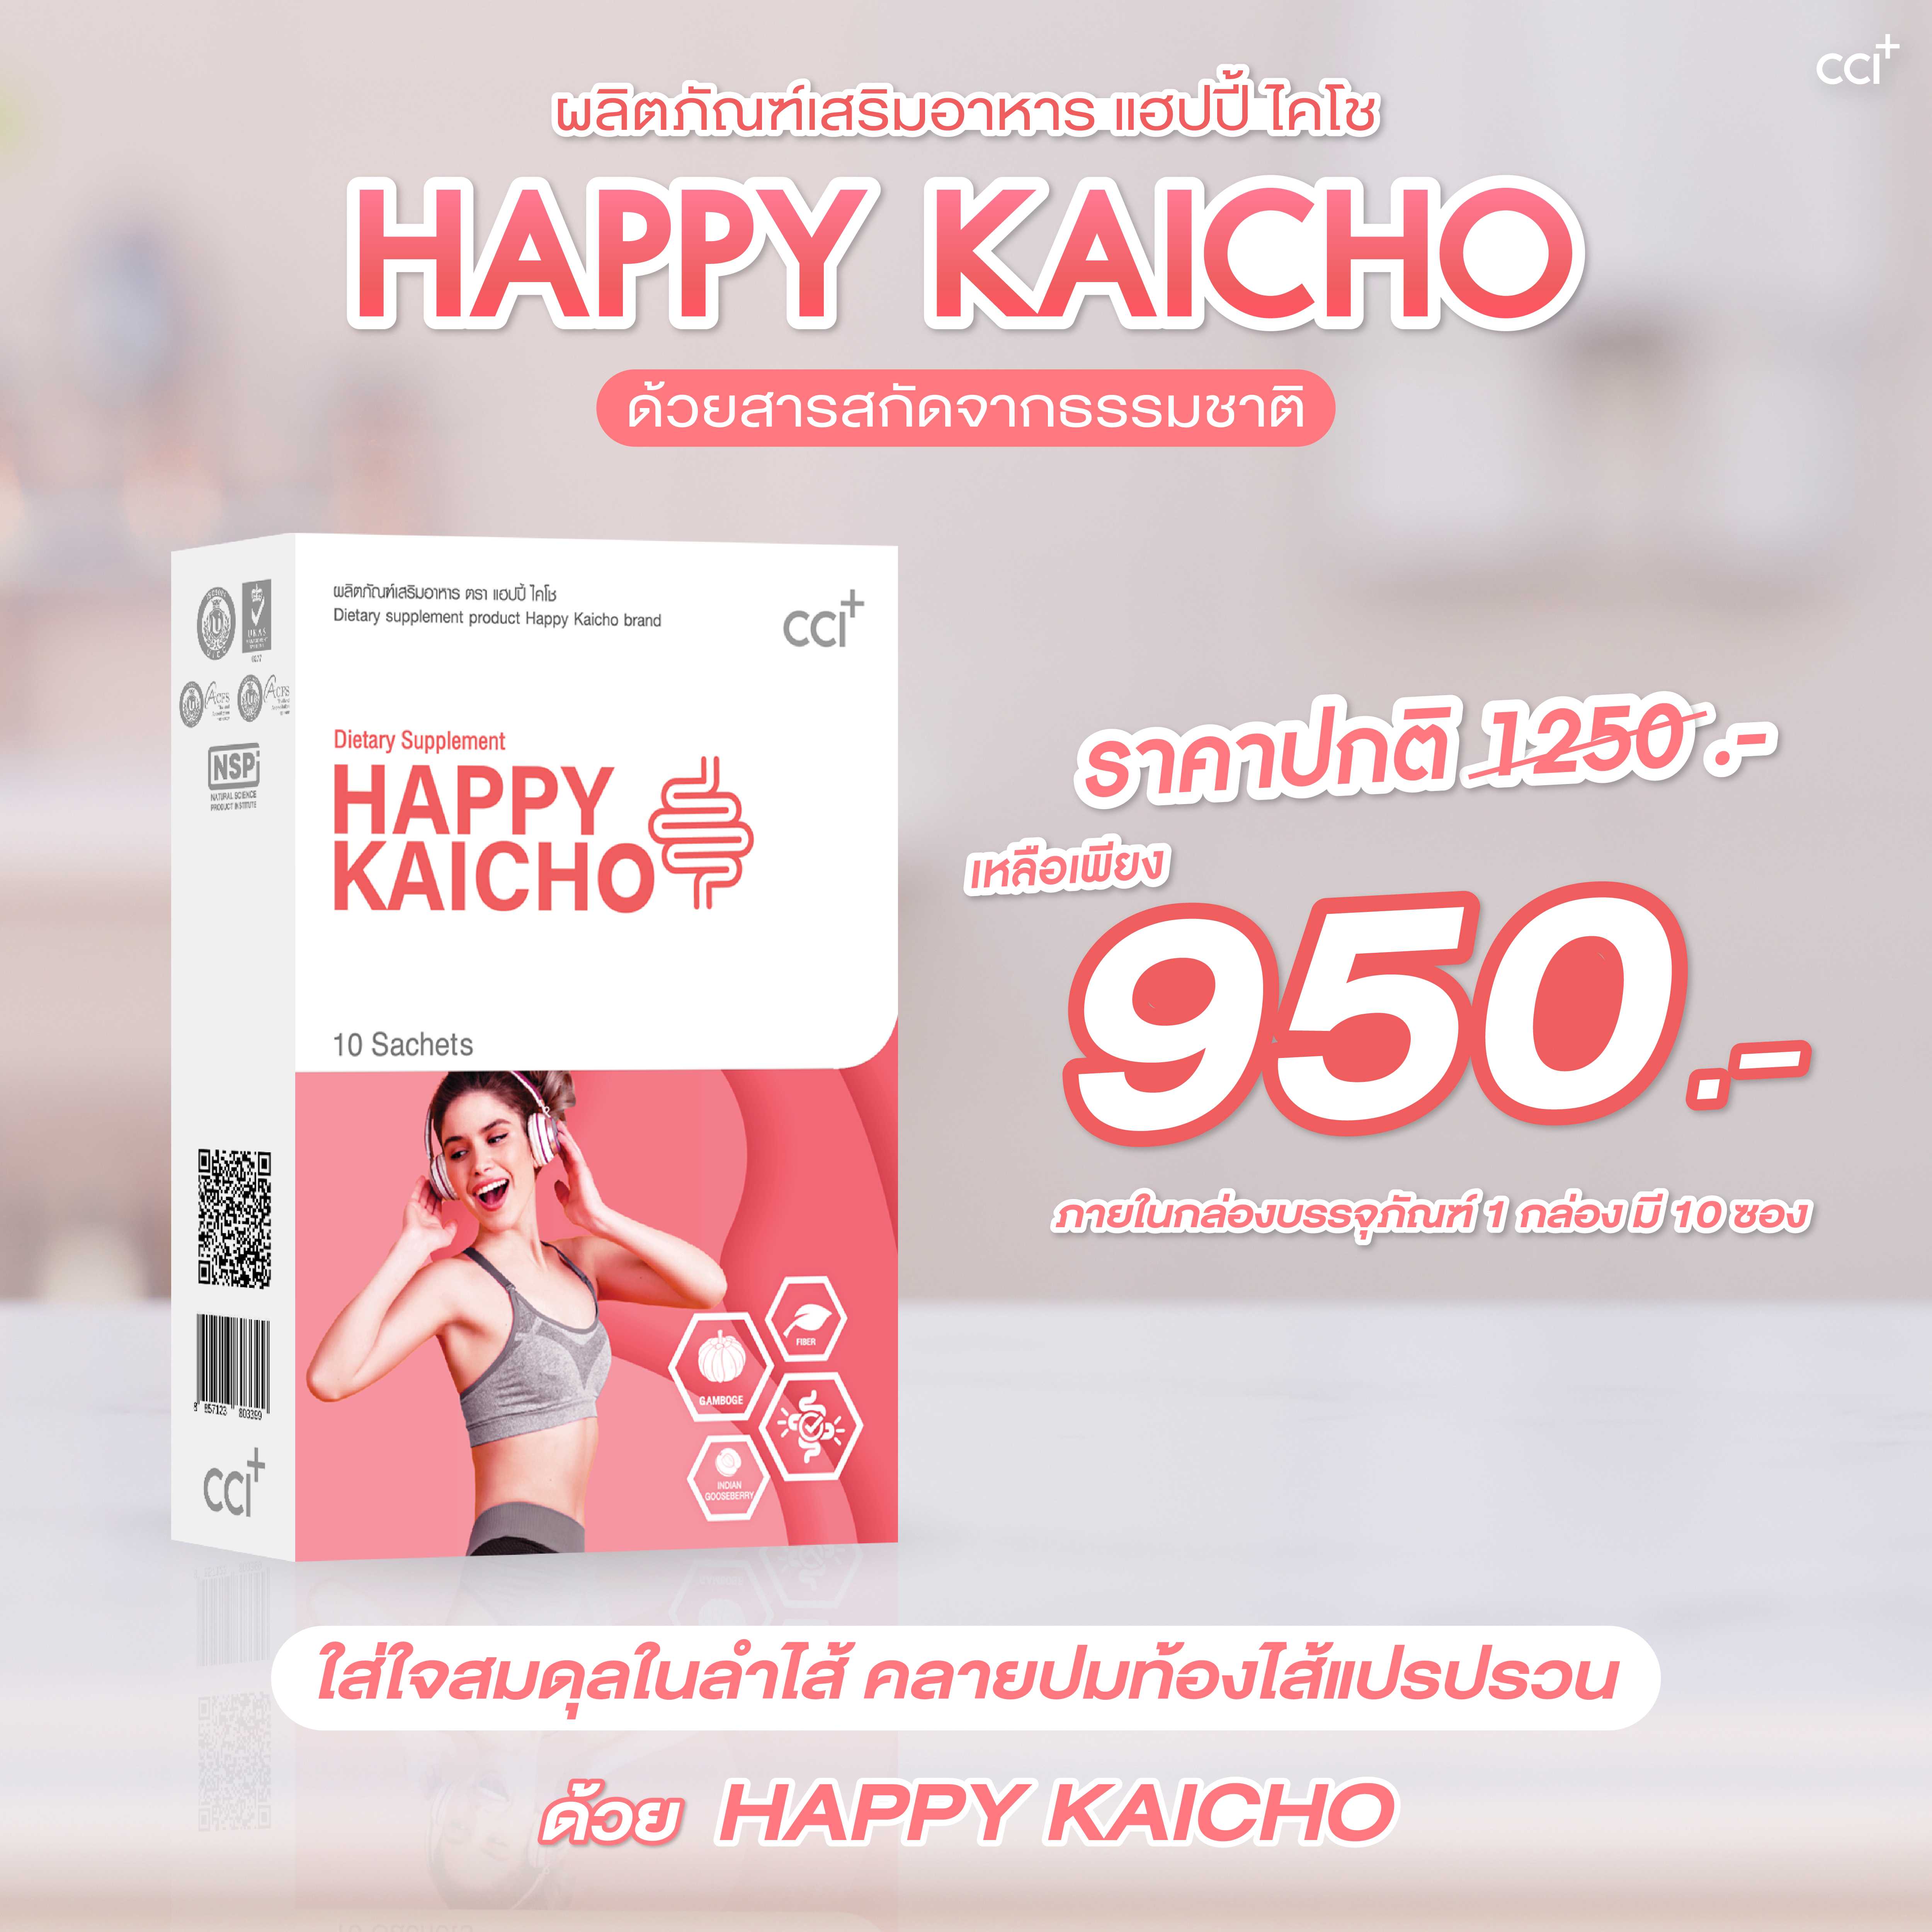 Happy Kaicho แฮปปี้ ไคโช ปัญหาท้องผูก ท้องเสียง่าย ลำไส้แปรปรวน